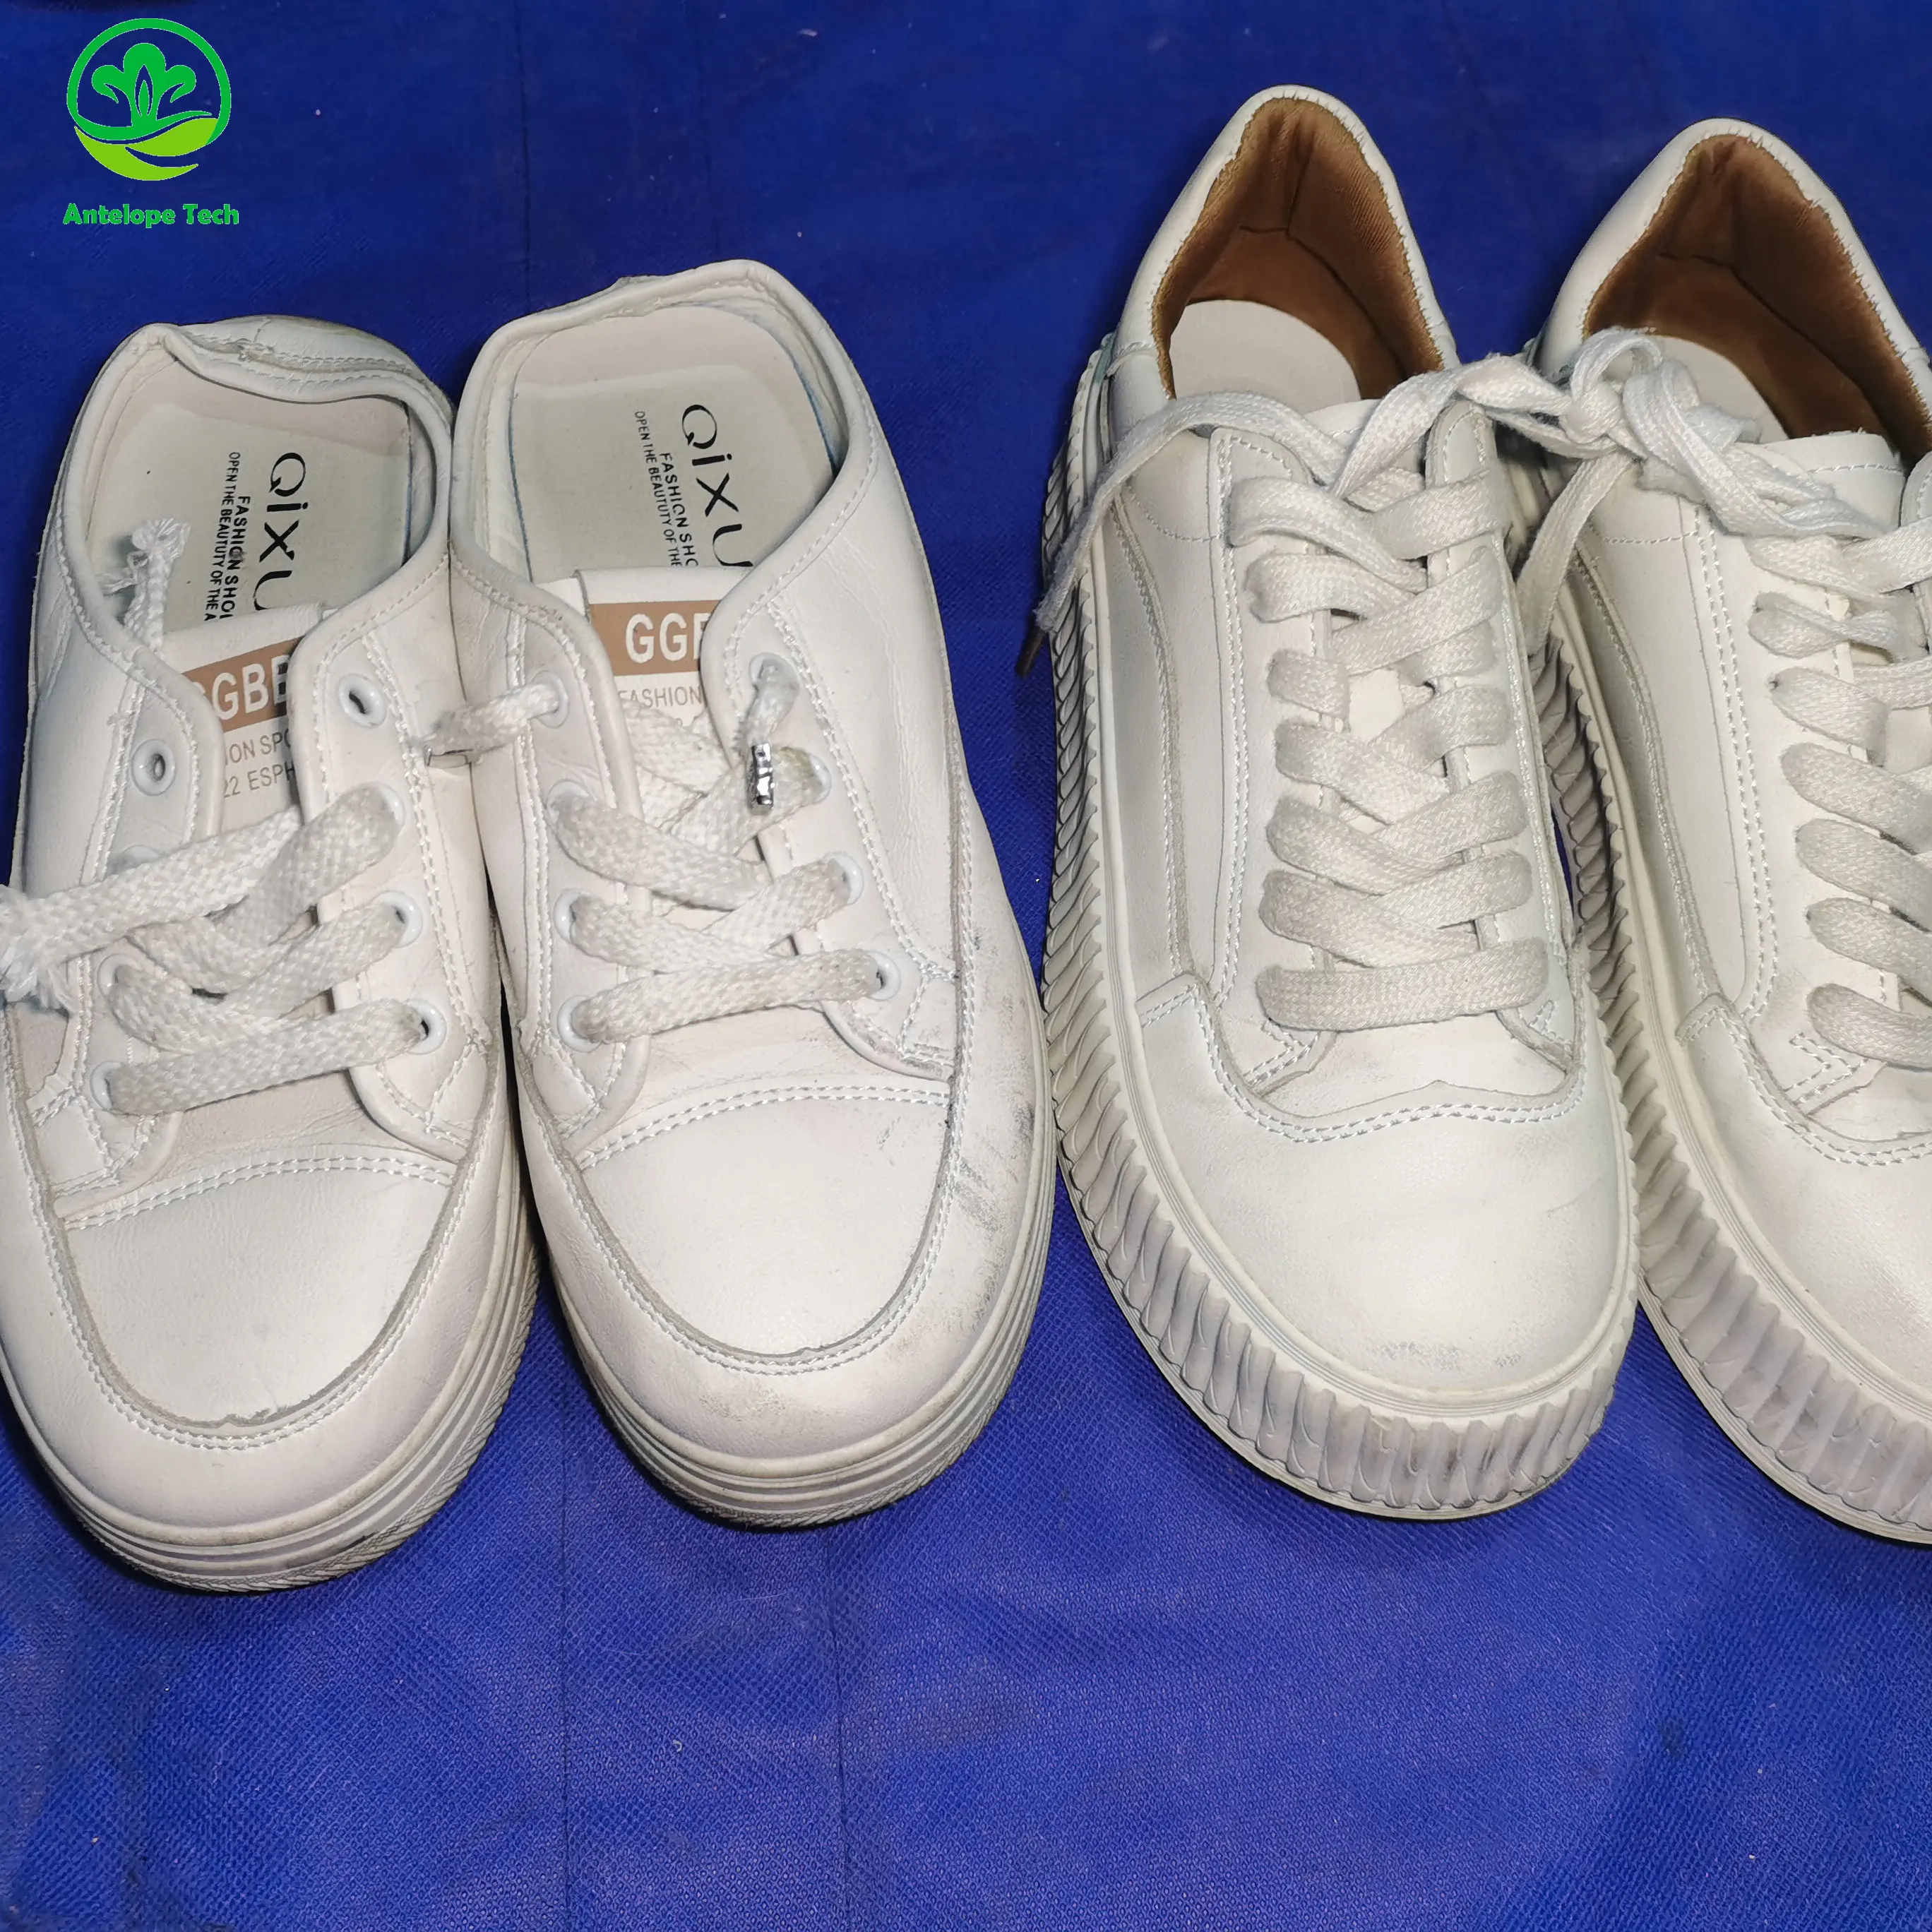 Красивая обувь очень популярна и продается напрямую мужскими брендовыми фабриками по производству подержанной обуви разных цветов и размеров